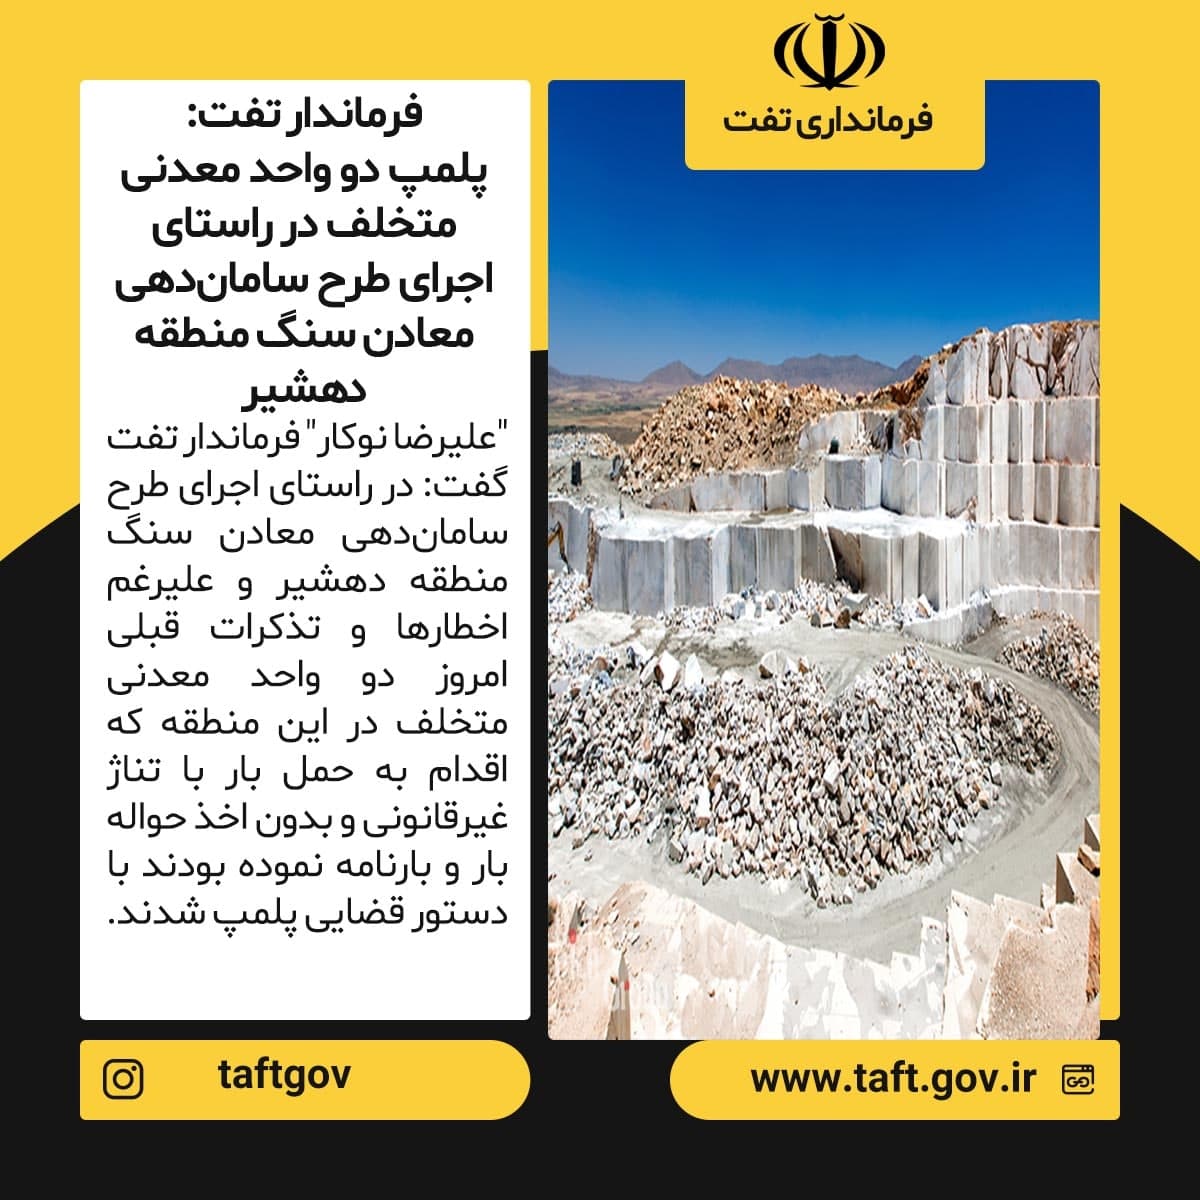  پلمپ دو واحد معدنی متخلف در راستای اجرای طرح سامان‌دهی معادن سنگ منطقه دهشیر